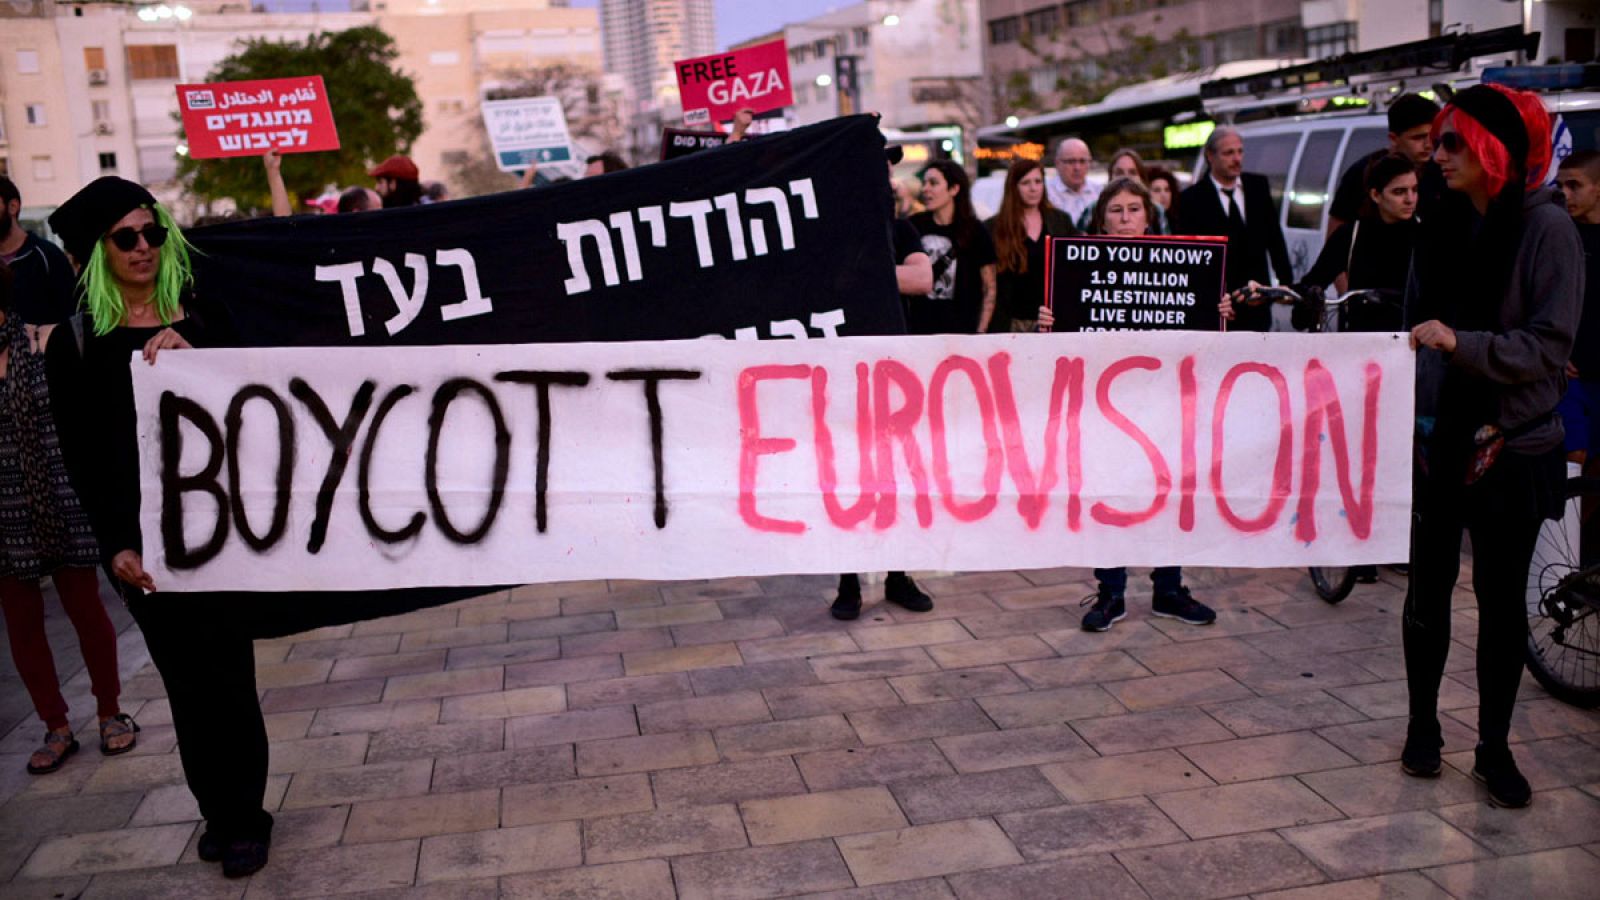 Eurovisión | Más de 20.000 policías protegerán el festival de Eurovisión en Tel Aviv